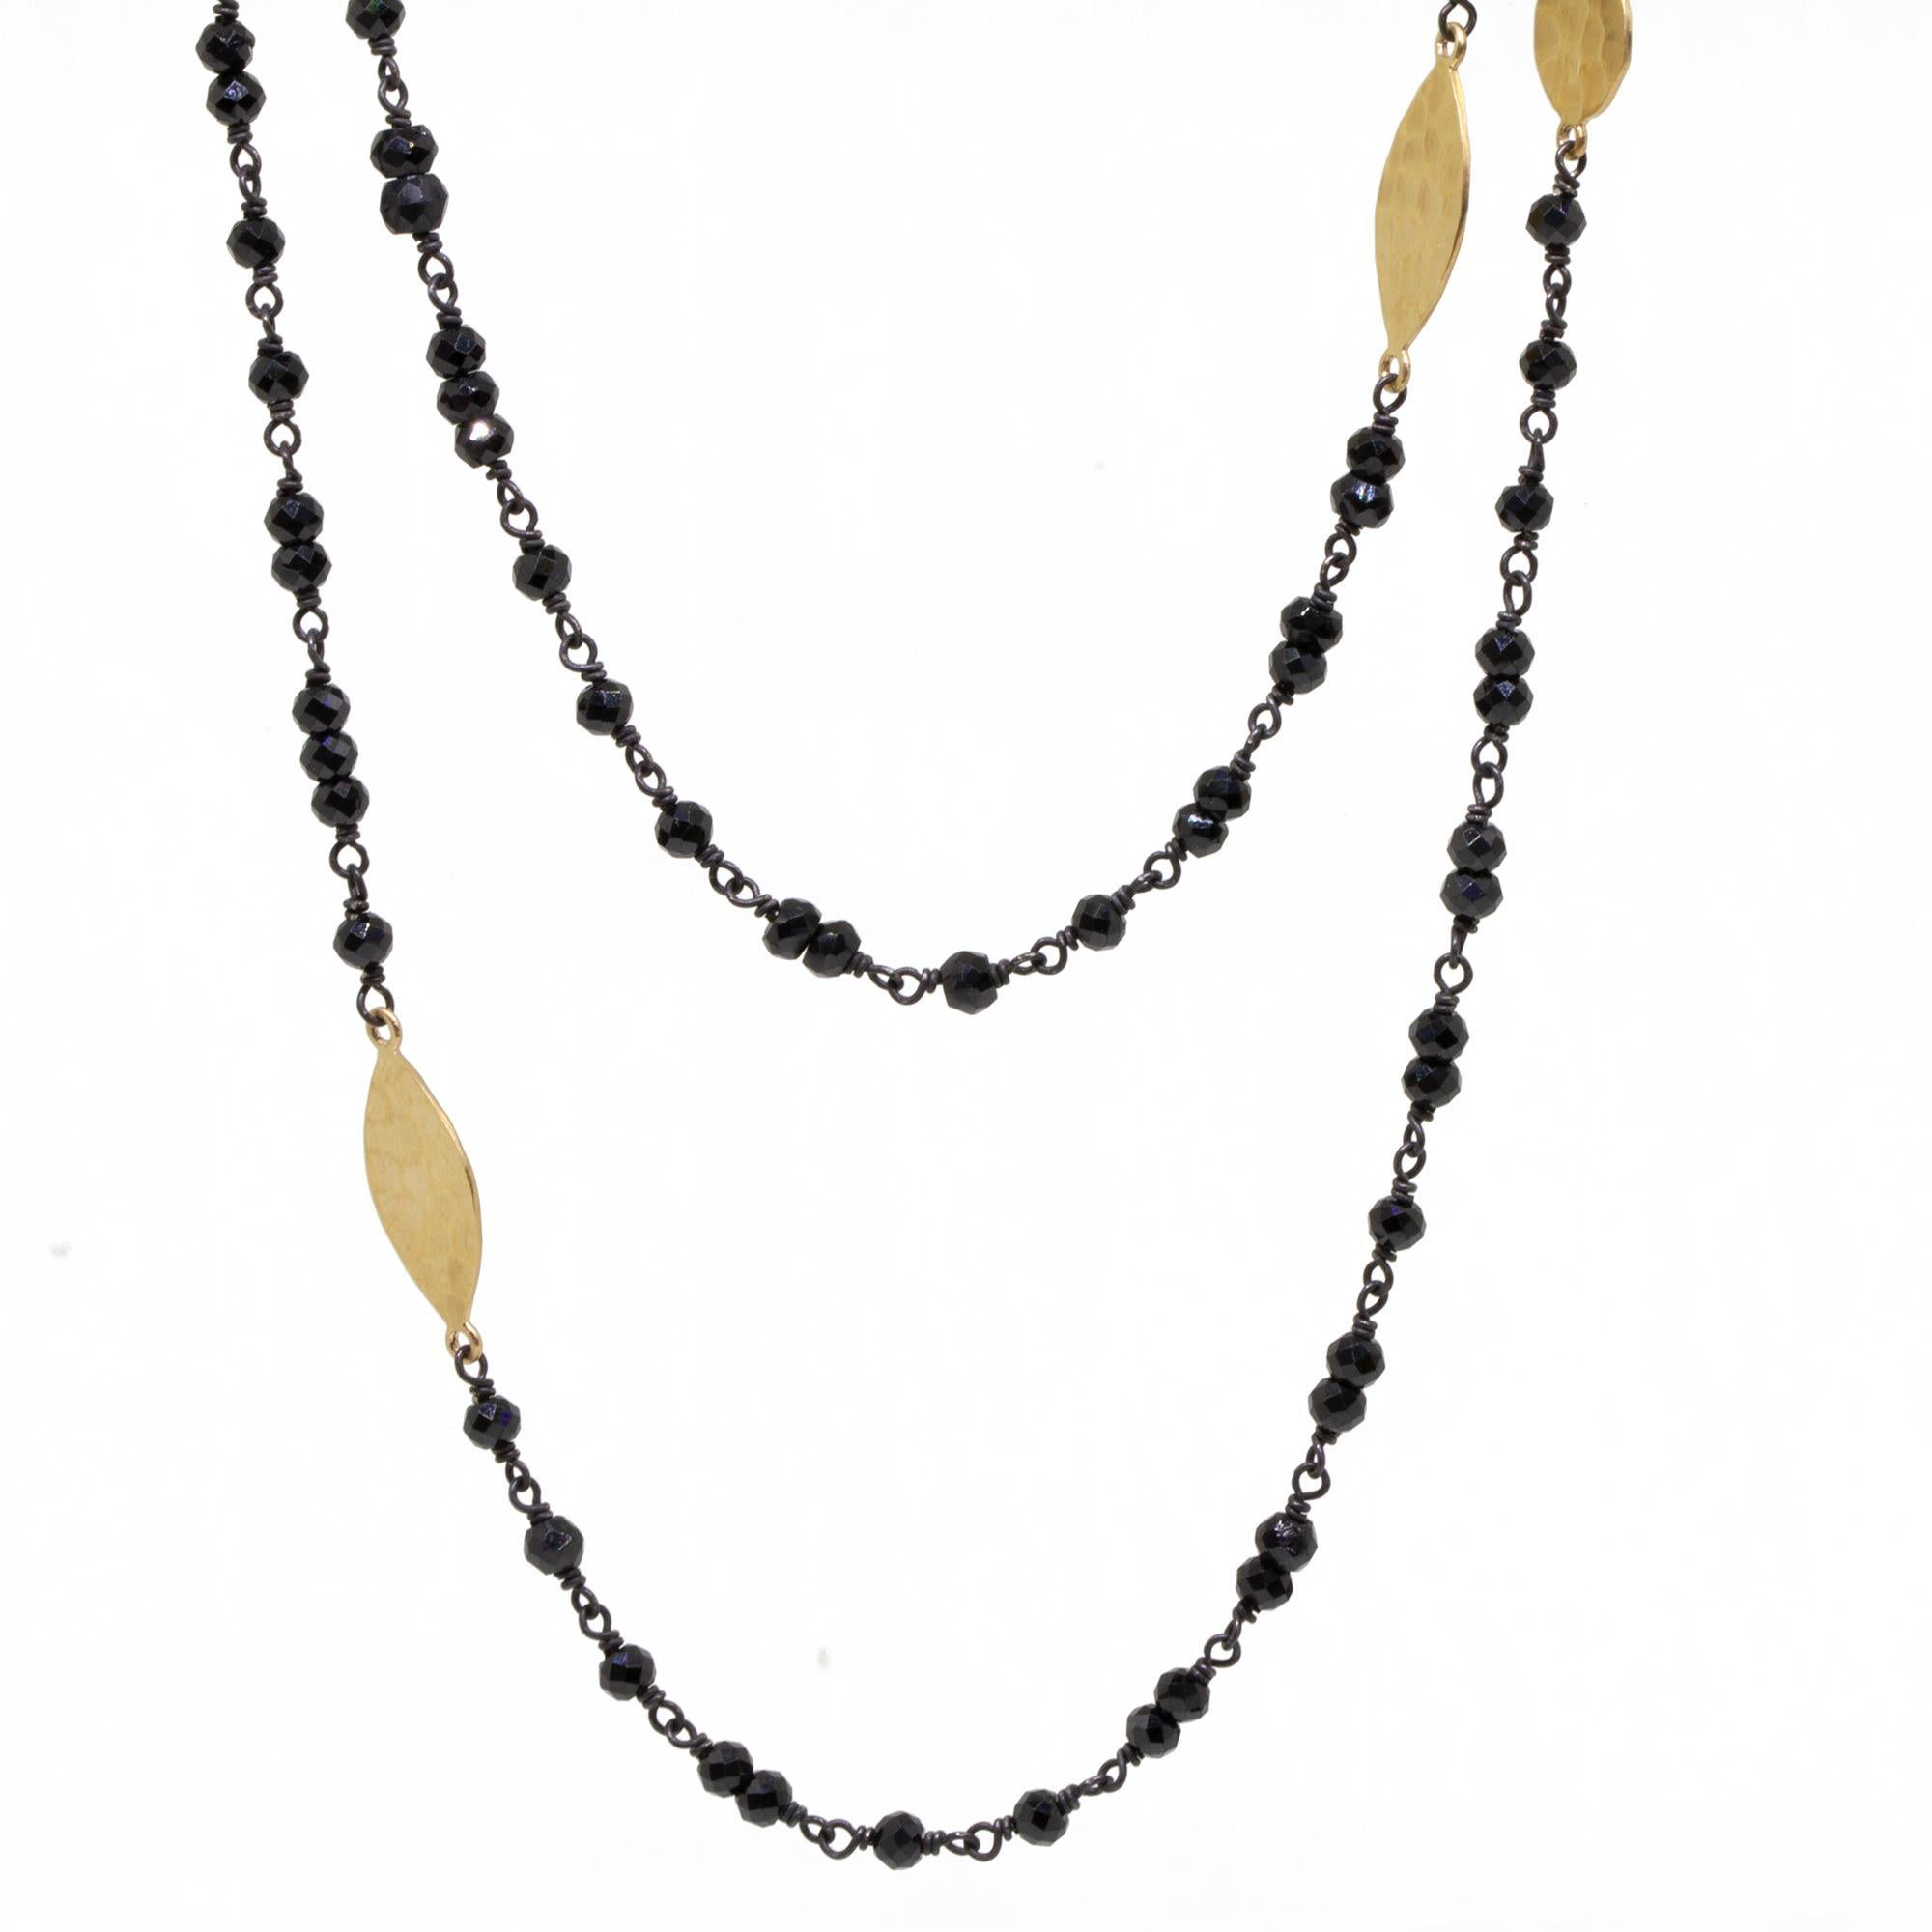 Avec ses marquises dorées texturées disposées le long d'un fil de perles de spinelle noir, le collier Spectrum Gold & Oxidized est la longueur parfaite pour être porté long et flottant, ou doublé pour un look superposé et ensoleillé.

Métal : Argent